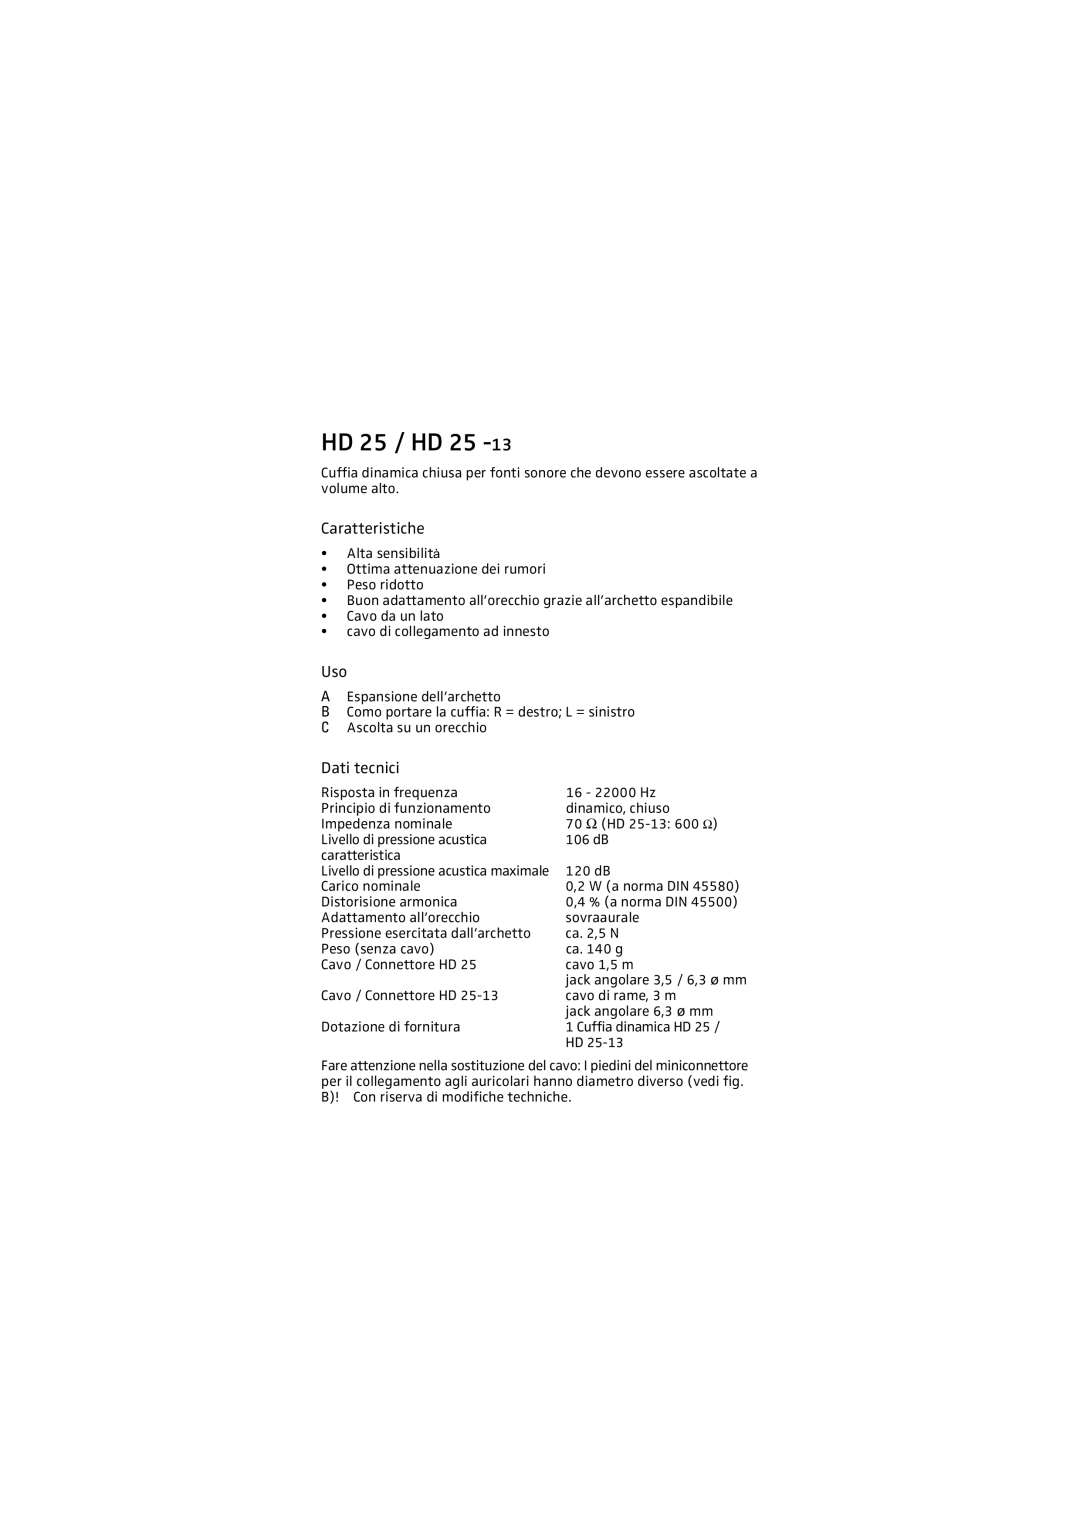 Sennheiser HD 25 - 13 manual Caratteristiche, Dati tecnici, HD 25 / HD 